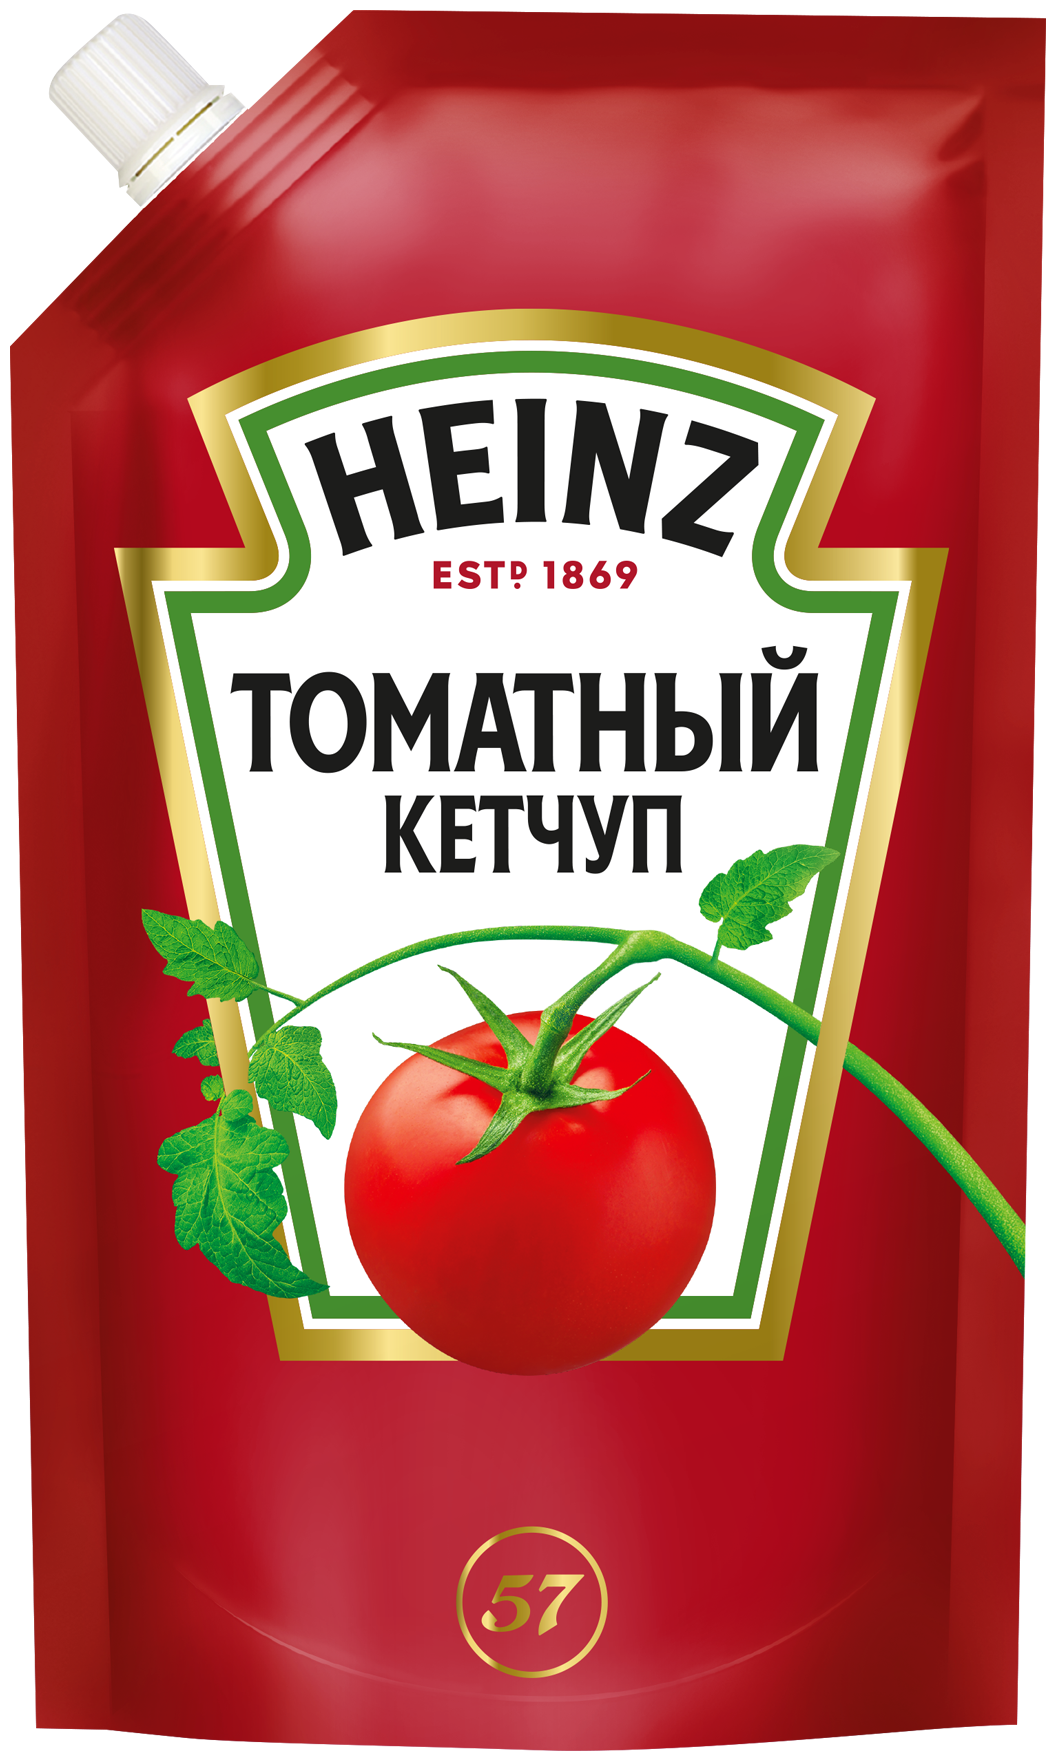 Кетчуп "Heinz" Томатный дой-пак 320 г